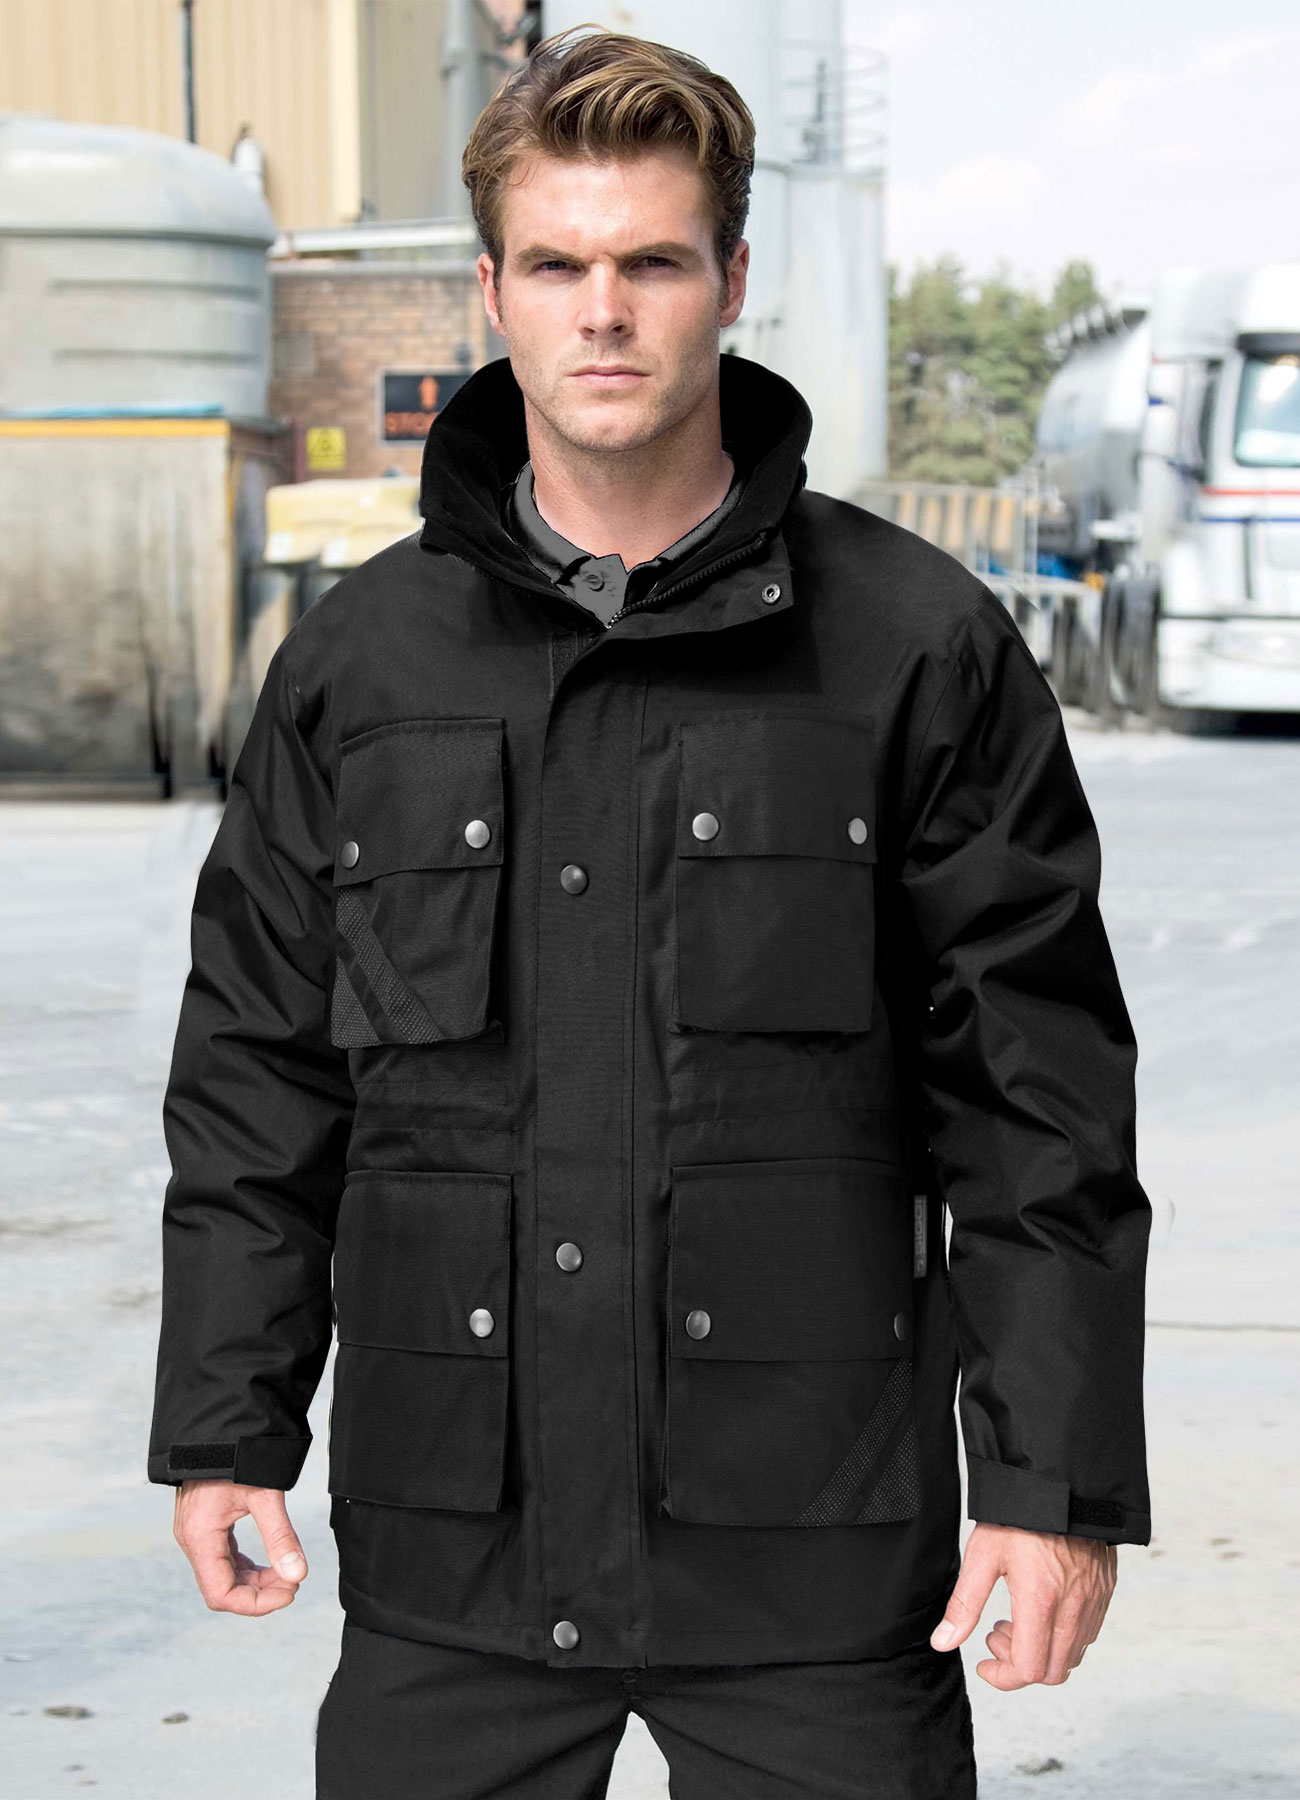 Bodyguard jacket - Bolzonella Divise